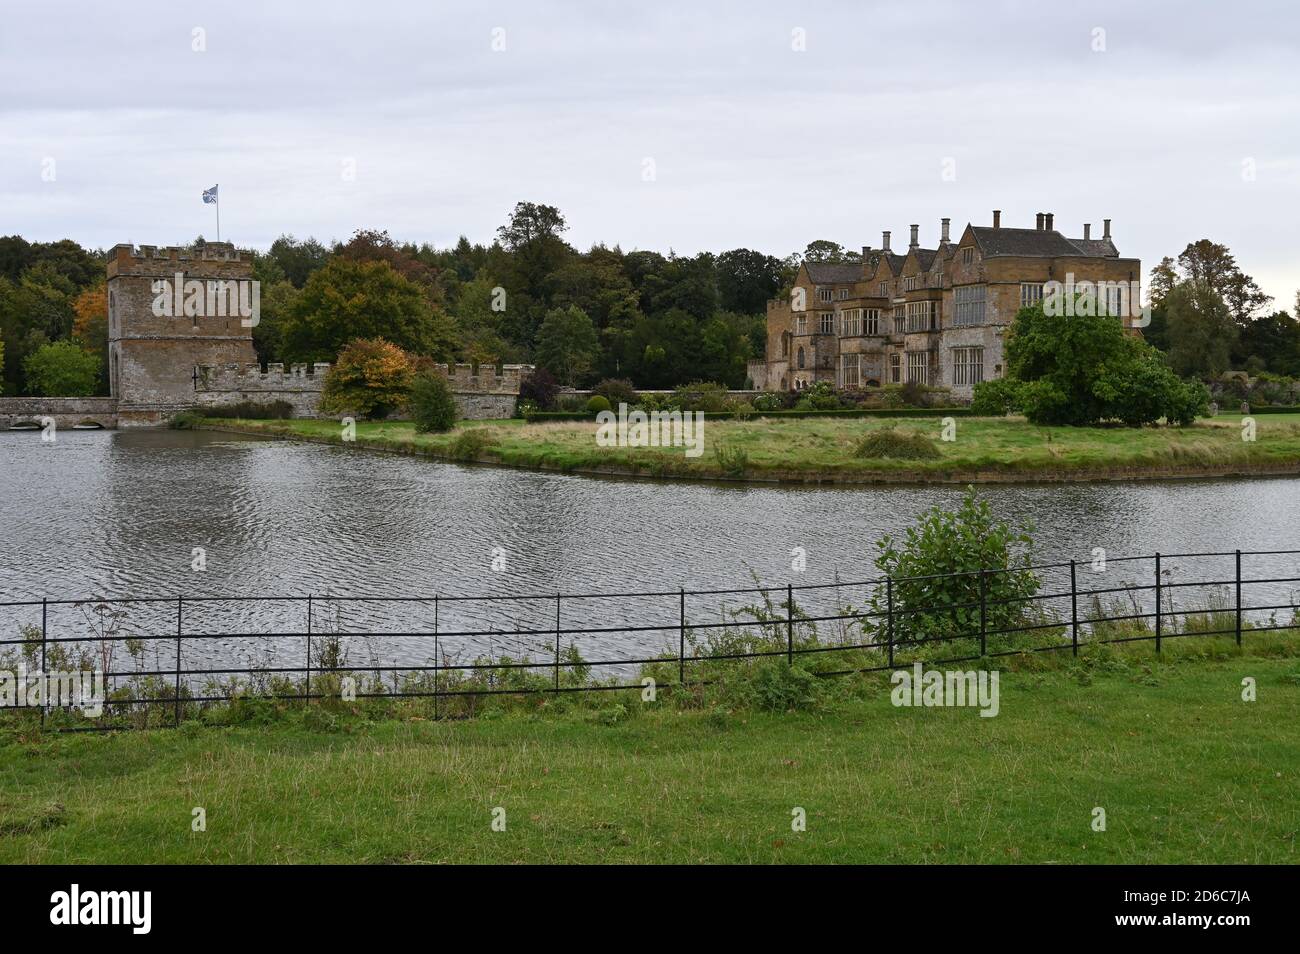 Broughton Castello nel villaggio dello stesso nome nel nord Oxfordshire vicino Banbury. Casa della famiglia Fiennes, Signore Saye e Sele. Foto Stock